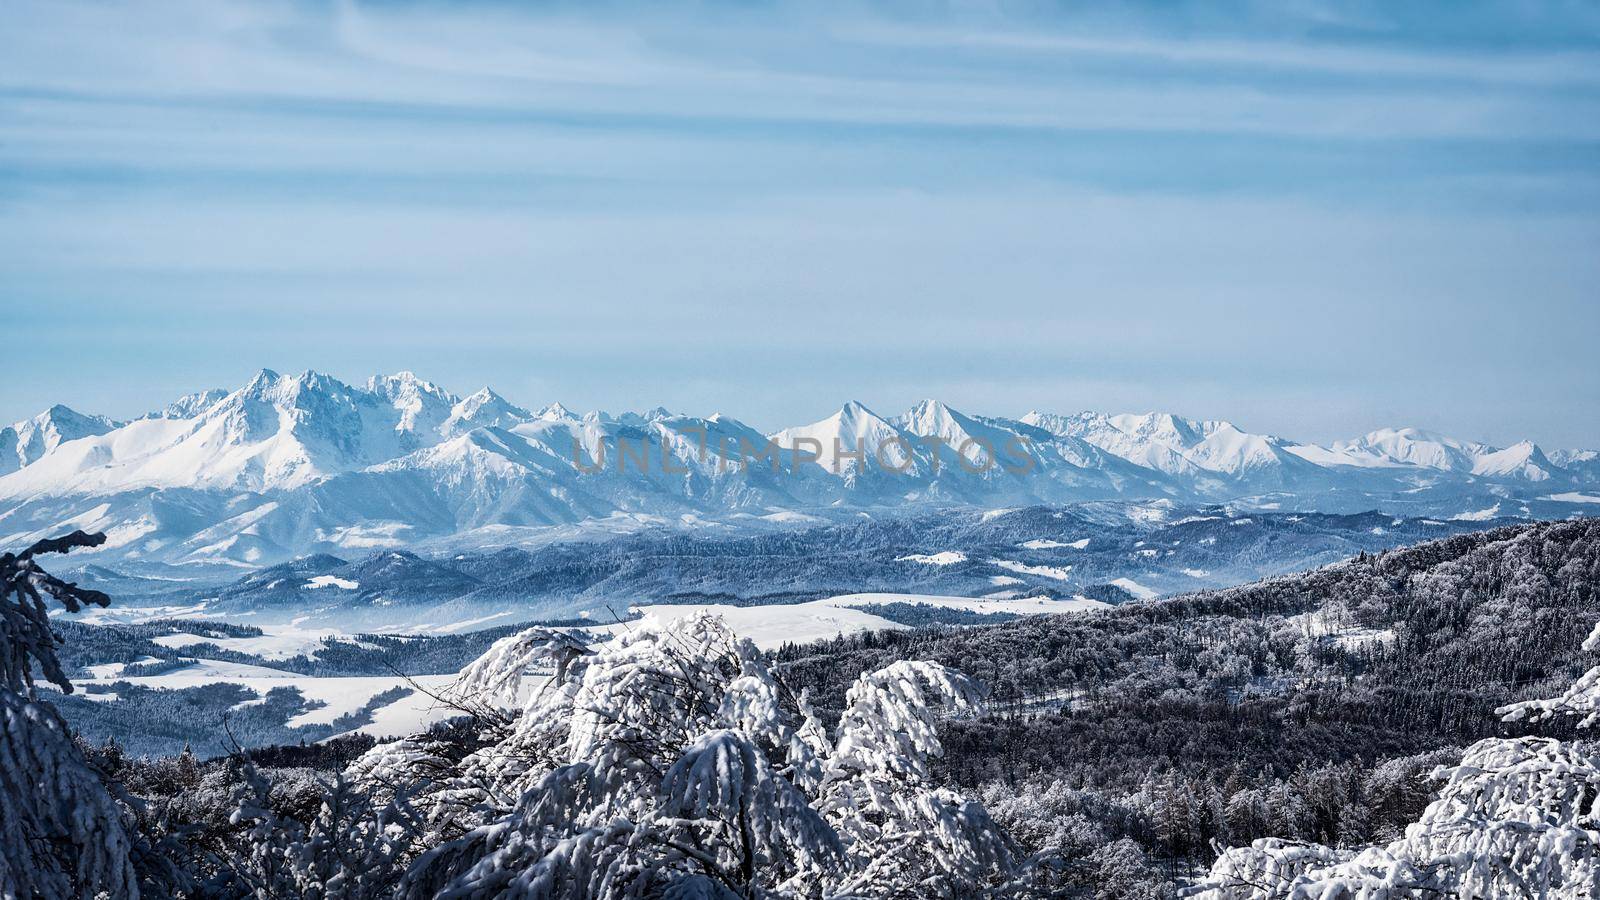 Breathtaking winter mountain landscape by wdnet_studio